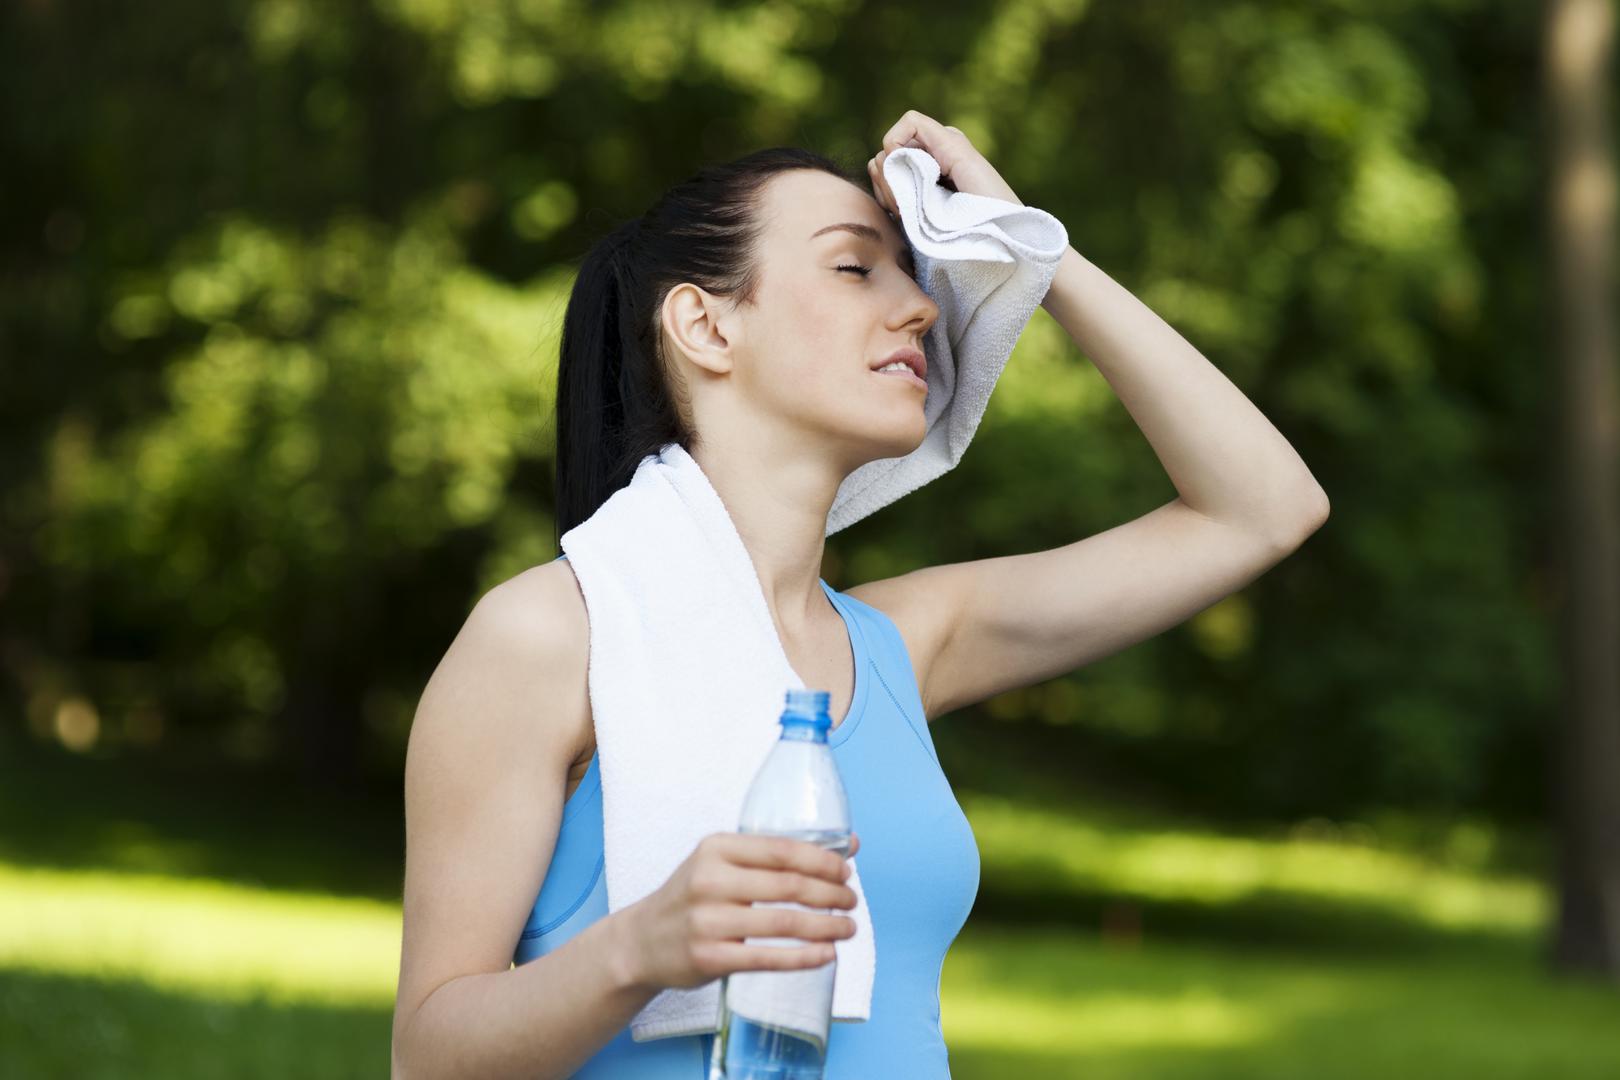 Znoj će ih također jako privući. Iako je teško izbjeći znojenje u ljetnim danima, češće se tuširajte i imajte sa sobom bocu vode kako biste se uvijek mogli osvježiti. 